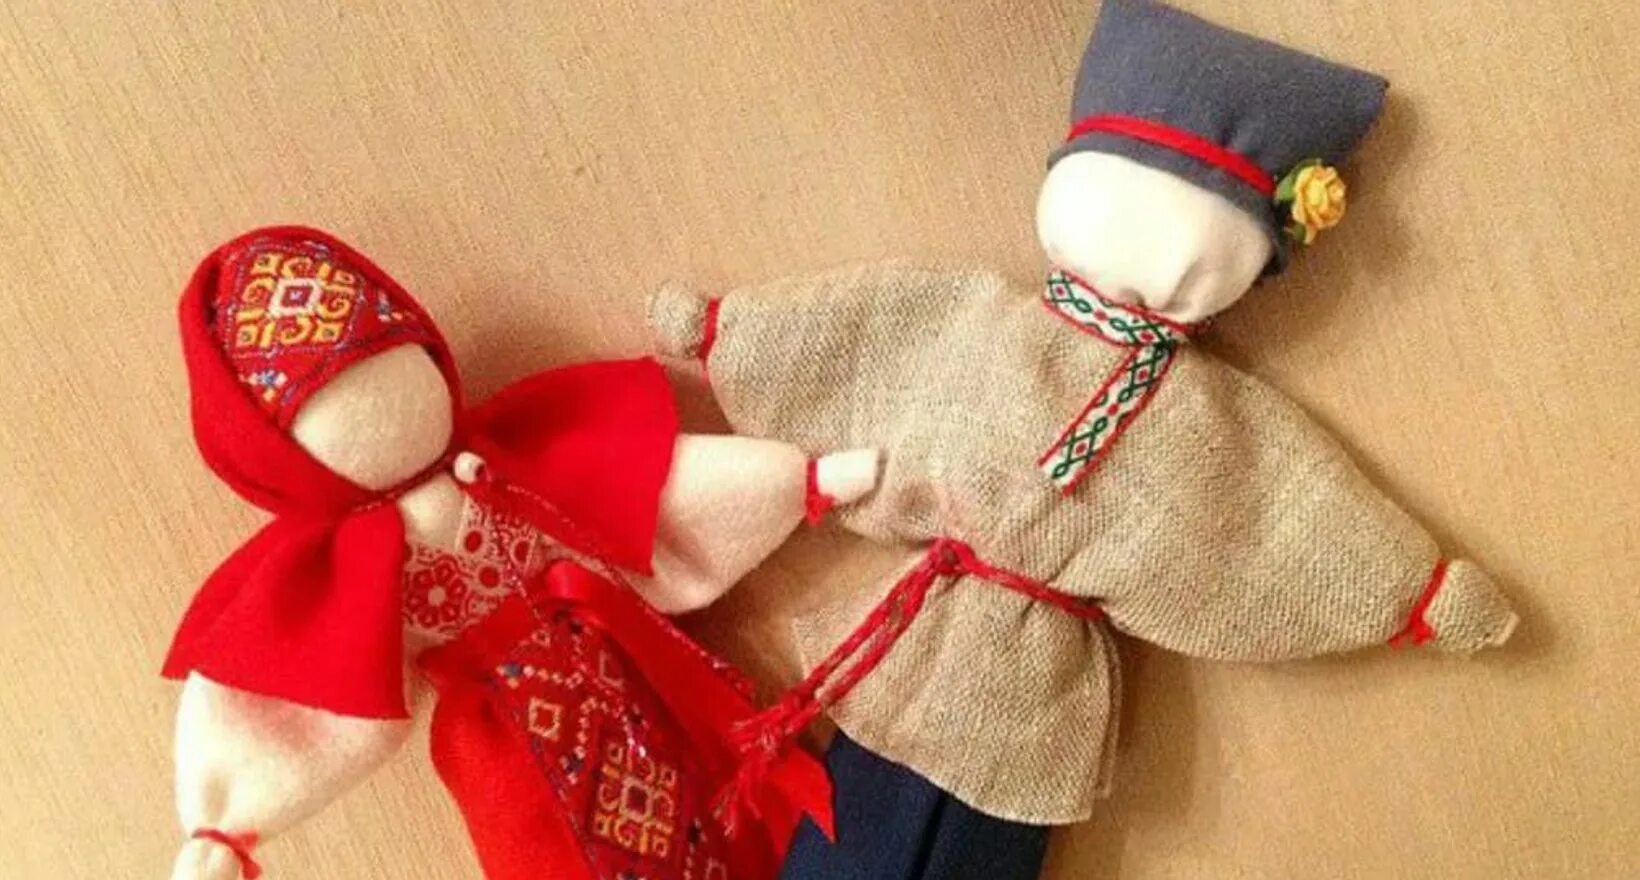 Кукла русская народная тряпичная кукла. Народная тряпичная кукла Тульской губернии. Русско народная тряпичная кукла. Народные Тряпичные куклы для детей. Русские народные игрушки куклы